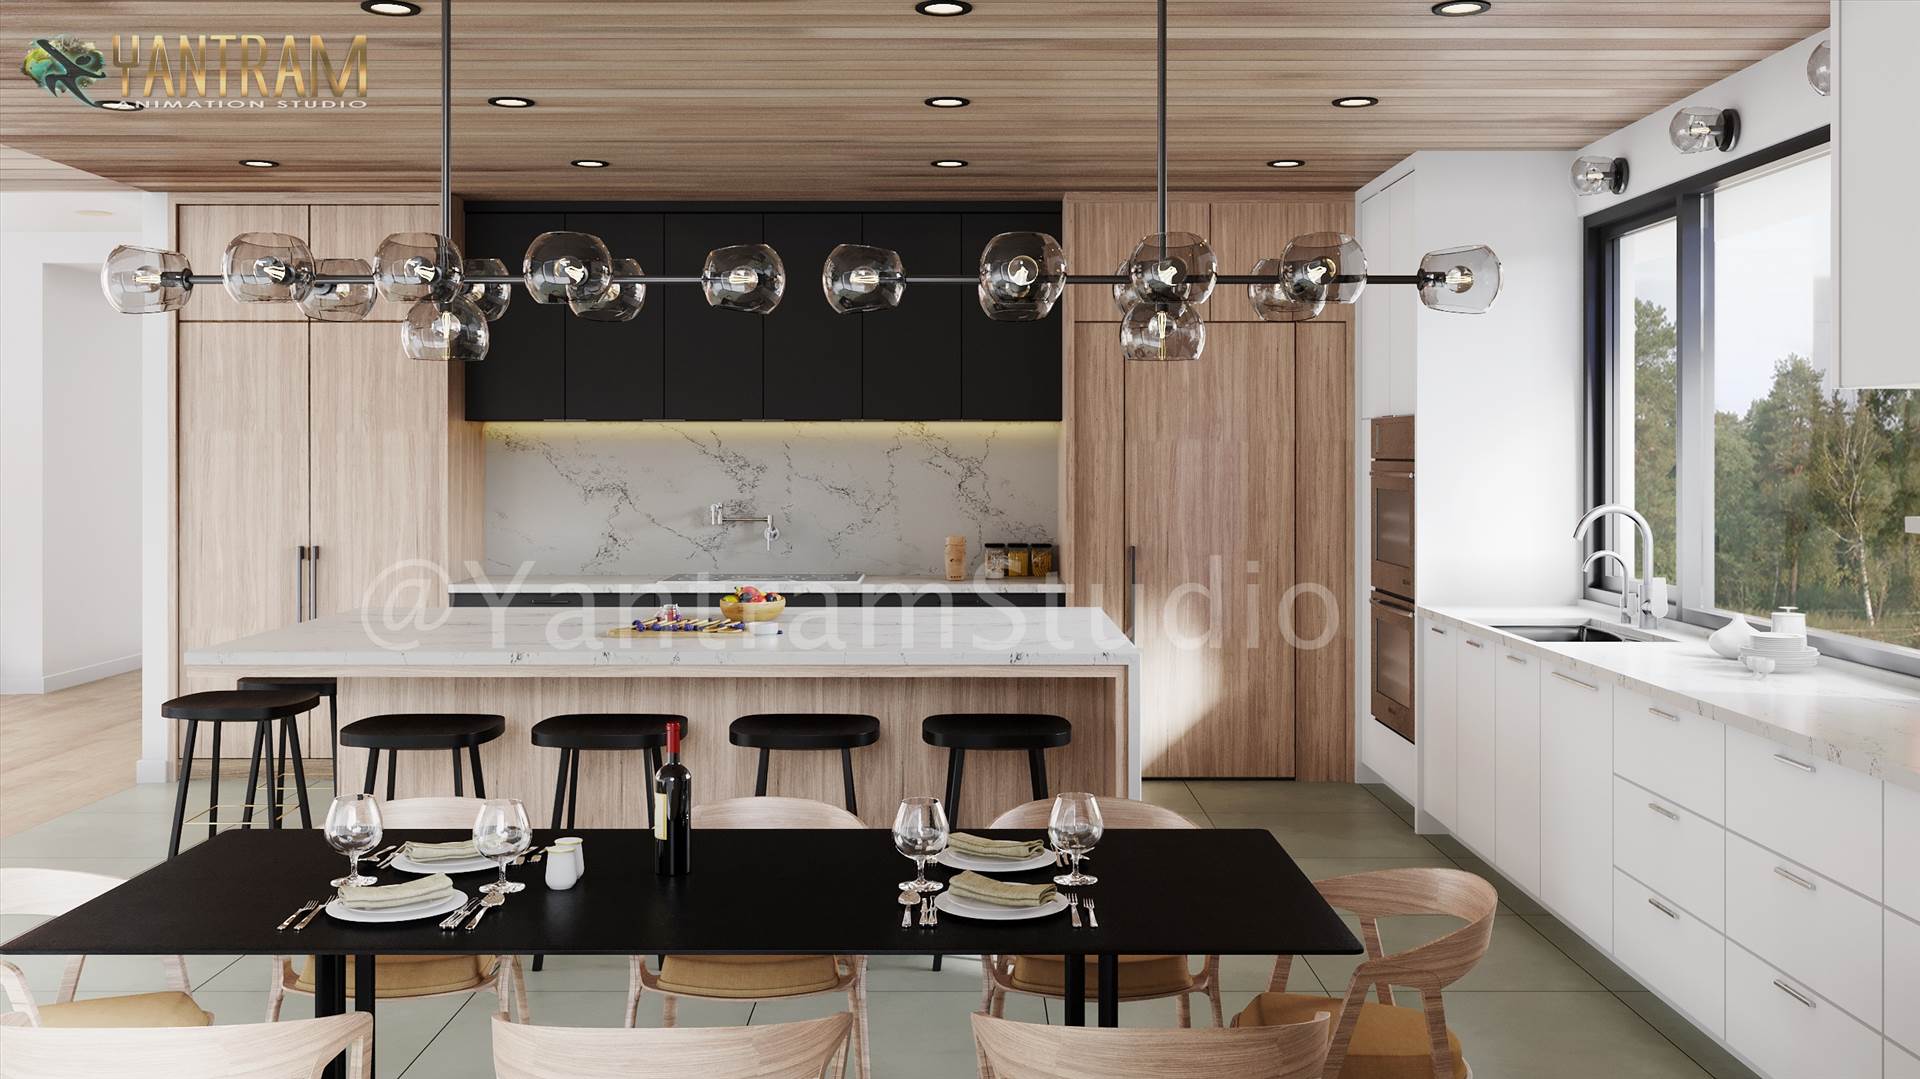 3D-Interior Designers- High-classy-kitchen-view-1-in-San Diego.jpg -  by Yantramarchitecturaldesignstudio